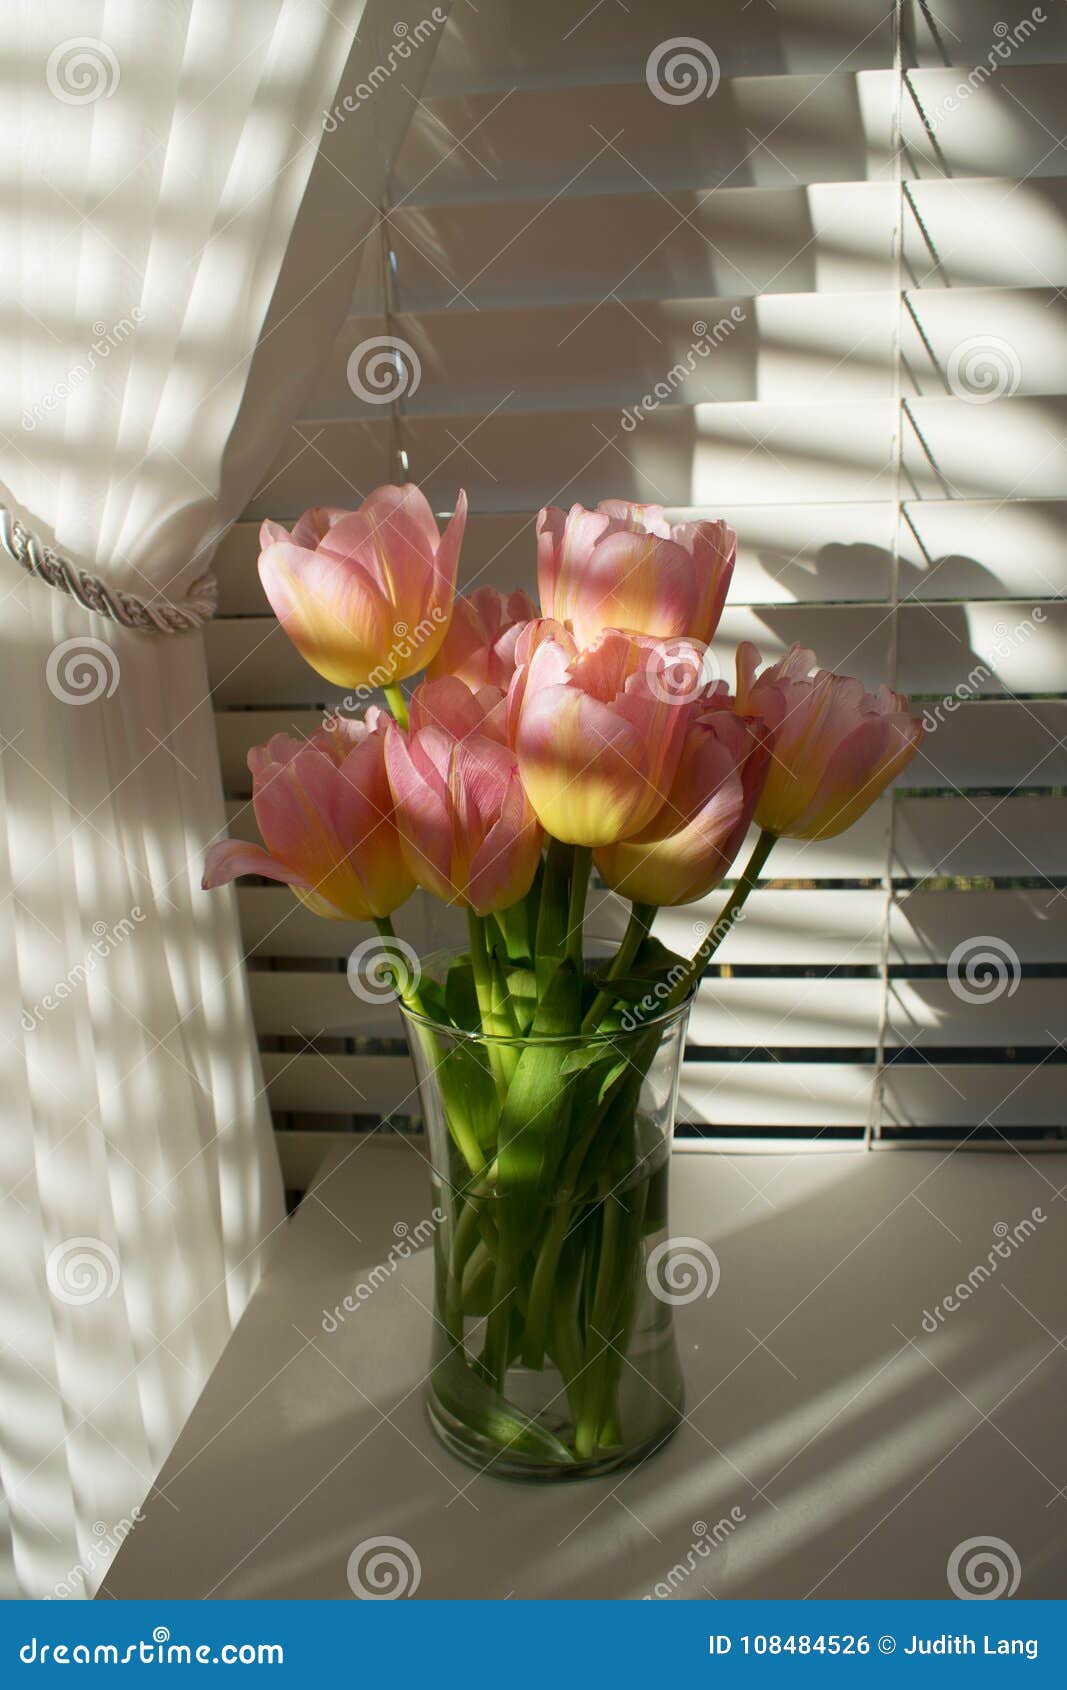 Розы можно ставить с тюльпанами. Тюльпаны на окне. Жалюзи и тюльпаны на окне. Шторы и ваза с тюльпанами. Римские шторы и ваза с тюльпанами.